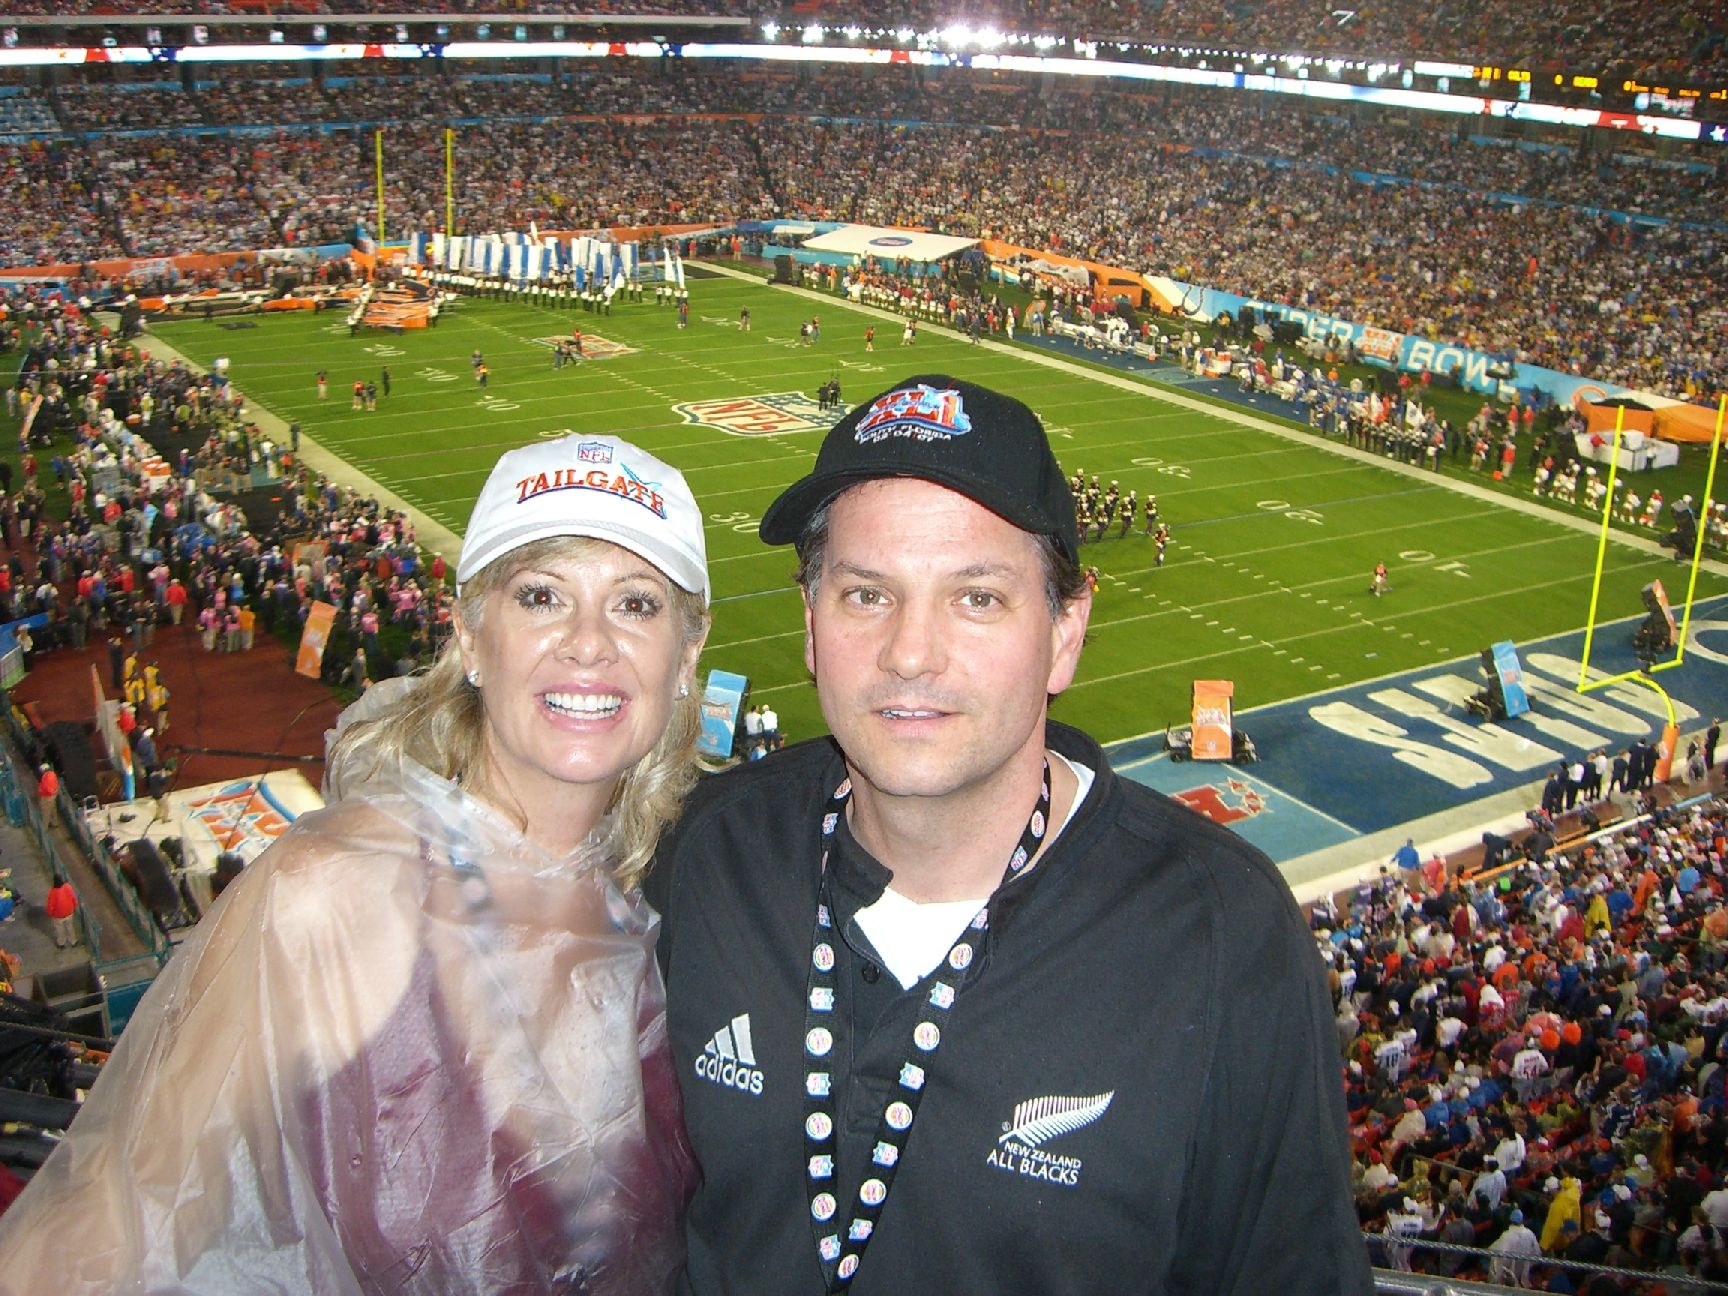 Us at the Super Bowl